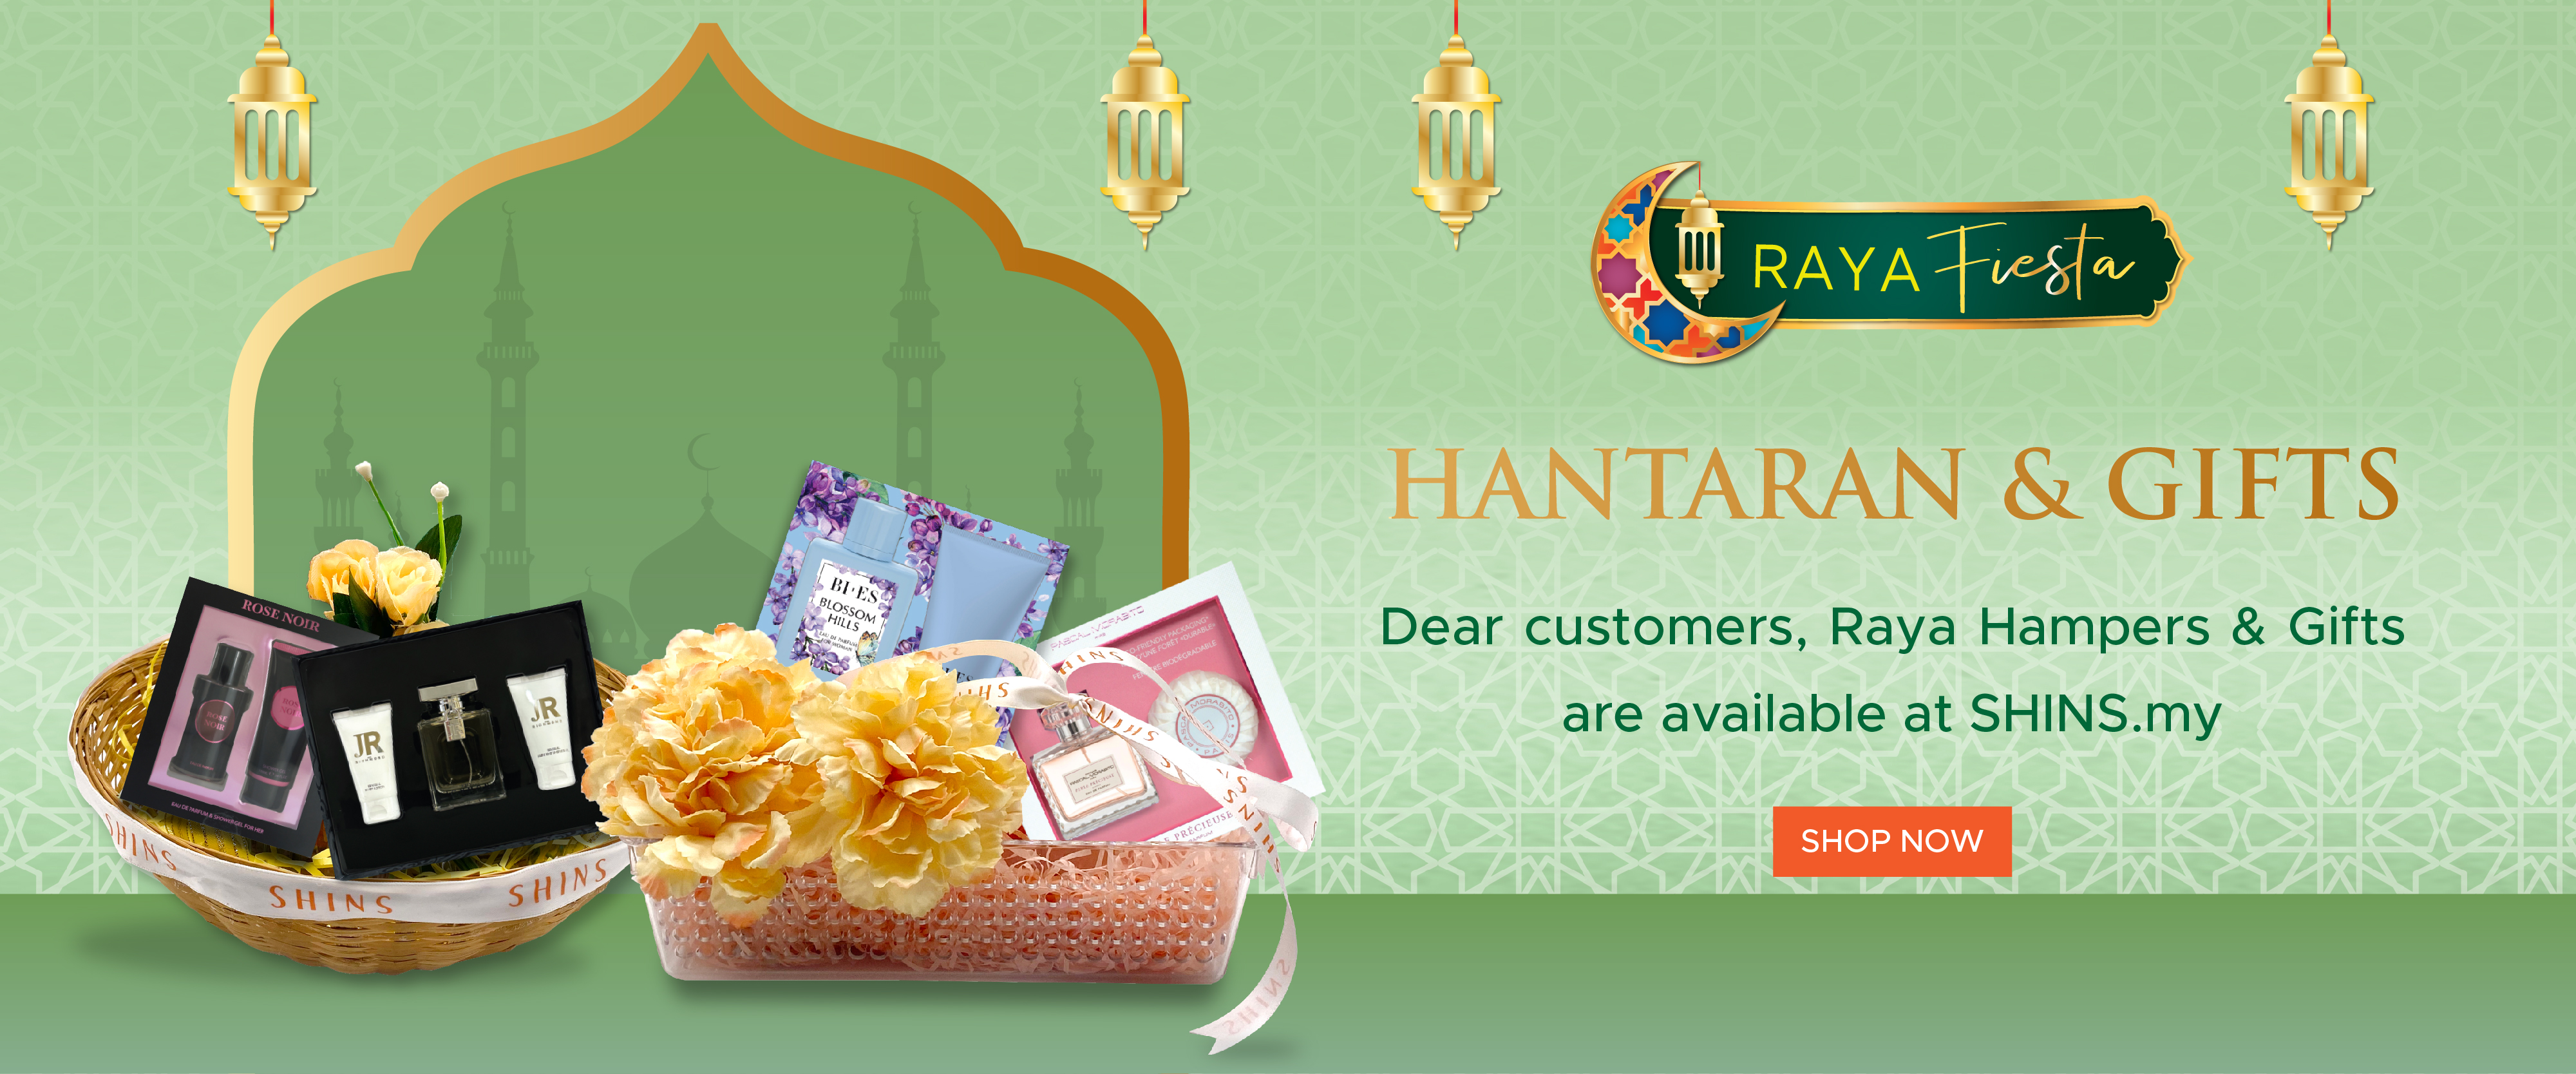 Raya Hantaran & Gift